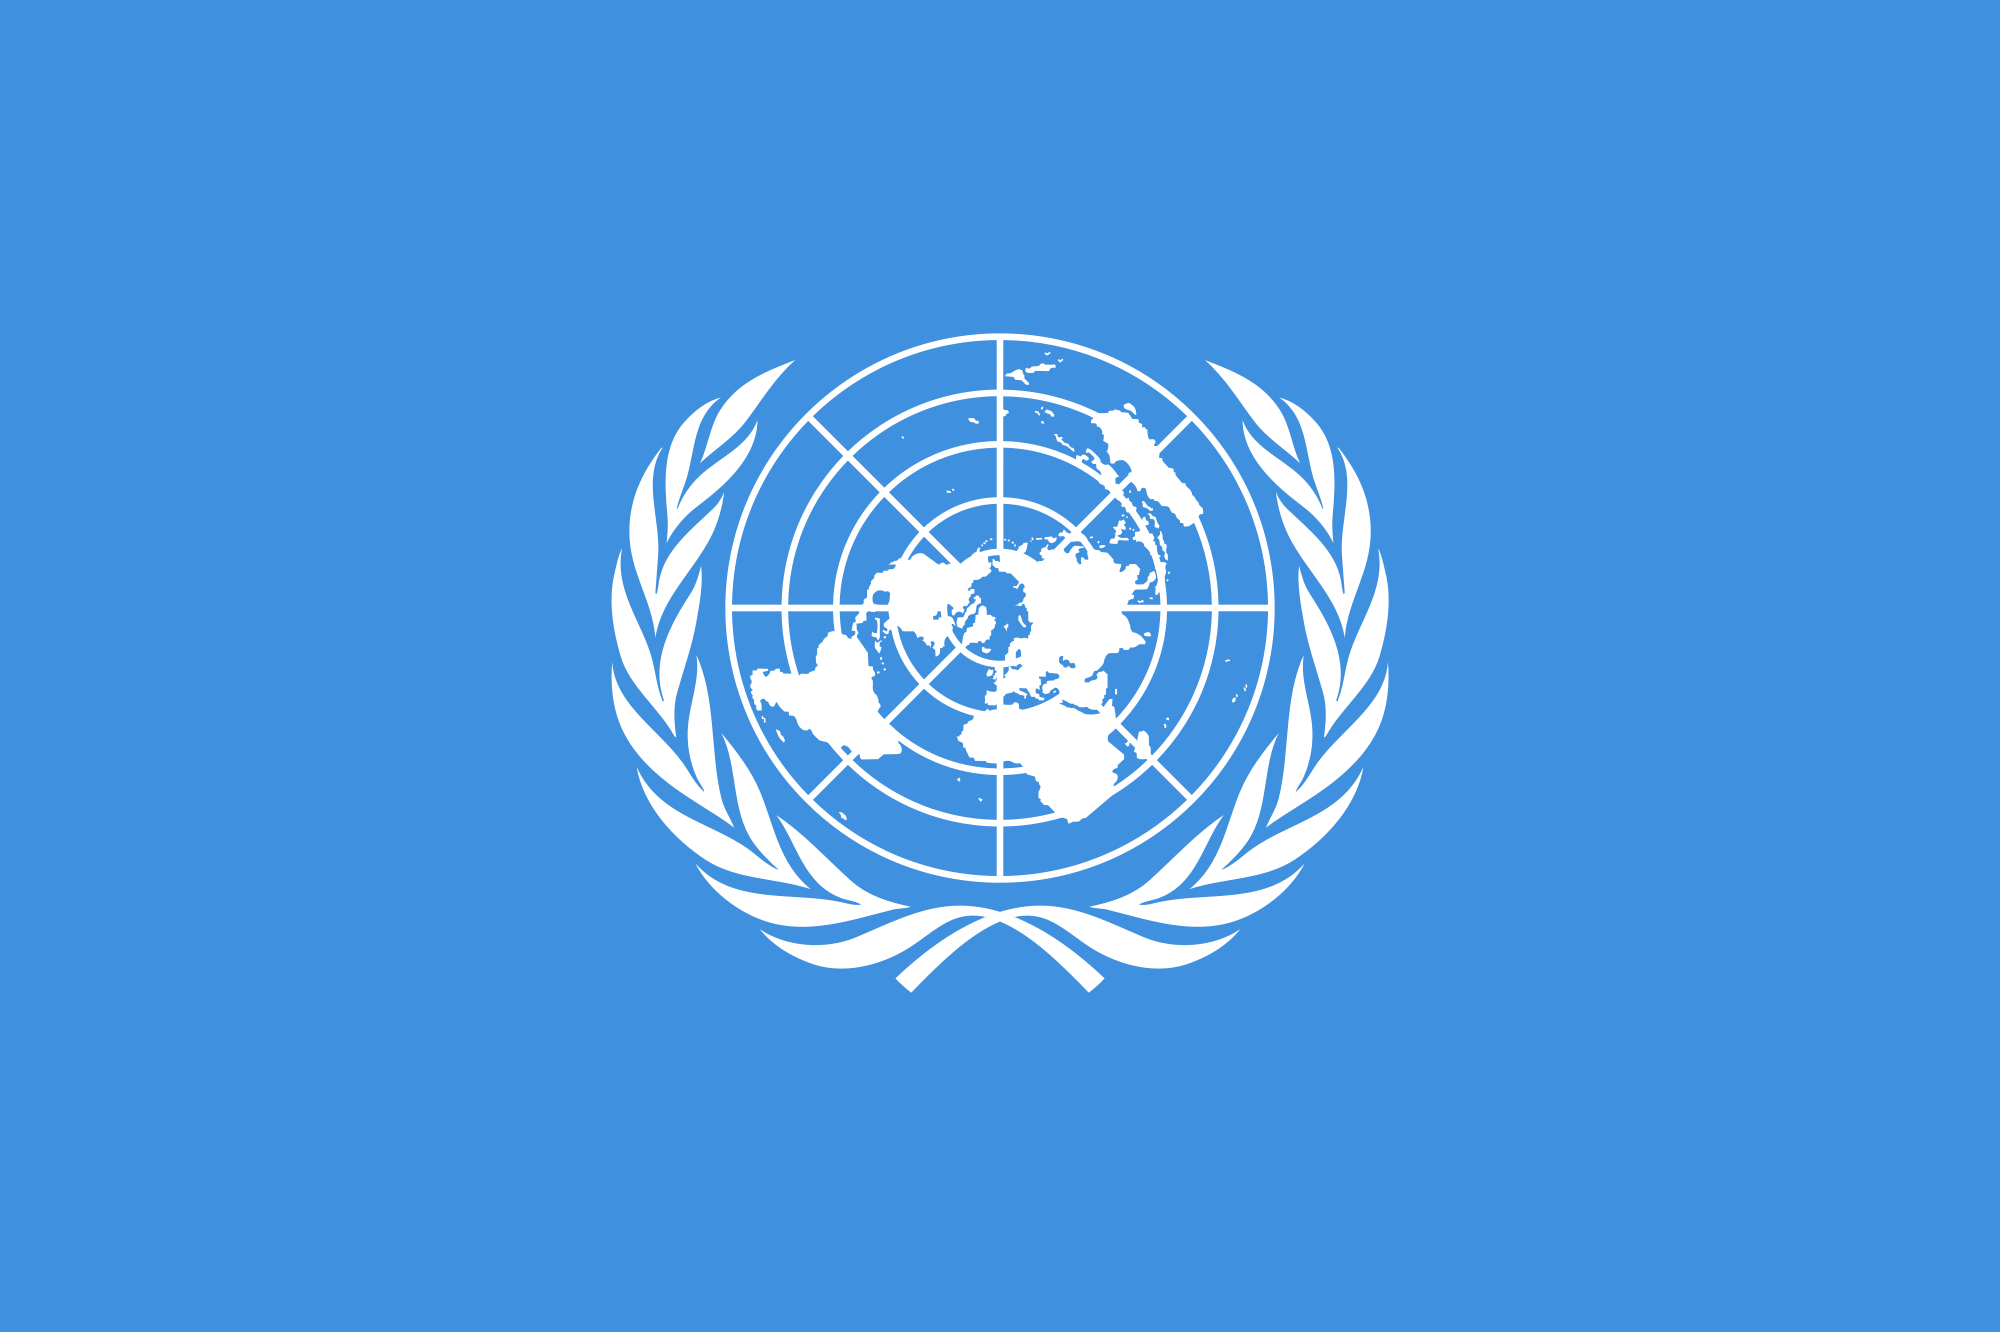 संयुक्त राष्ट्रसंघीय आपतकालीन कोषमा दातृ निकायले ३७ करोड डलर उपलब्ध गराउने